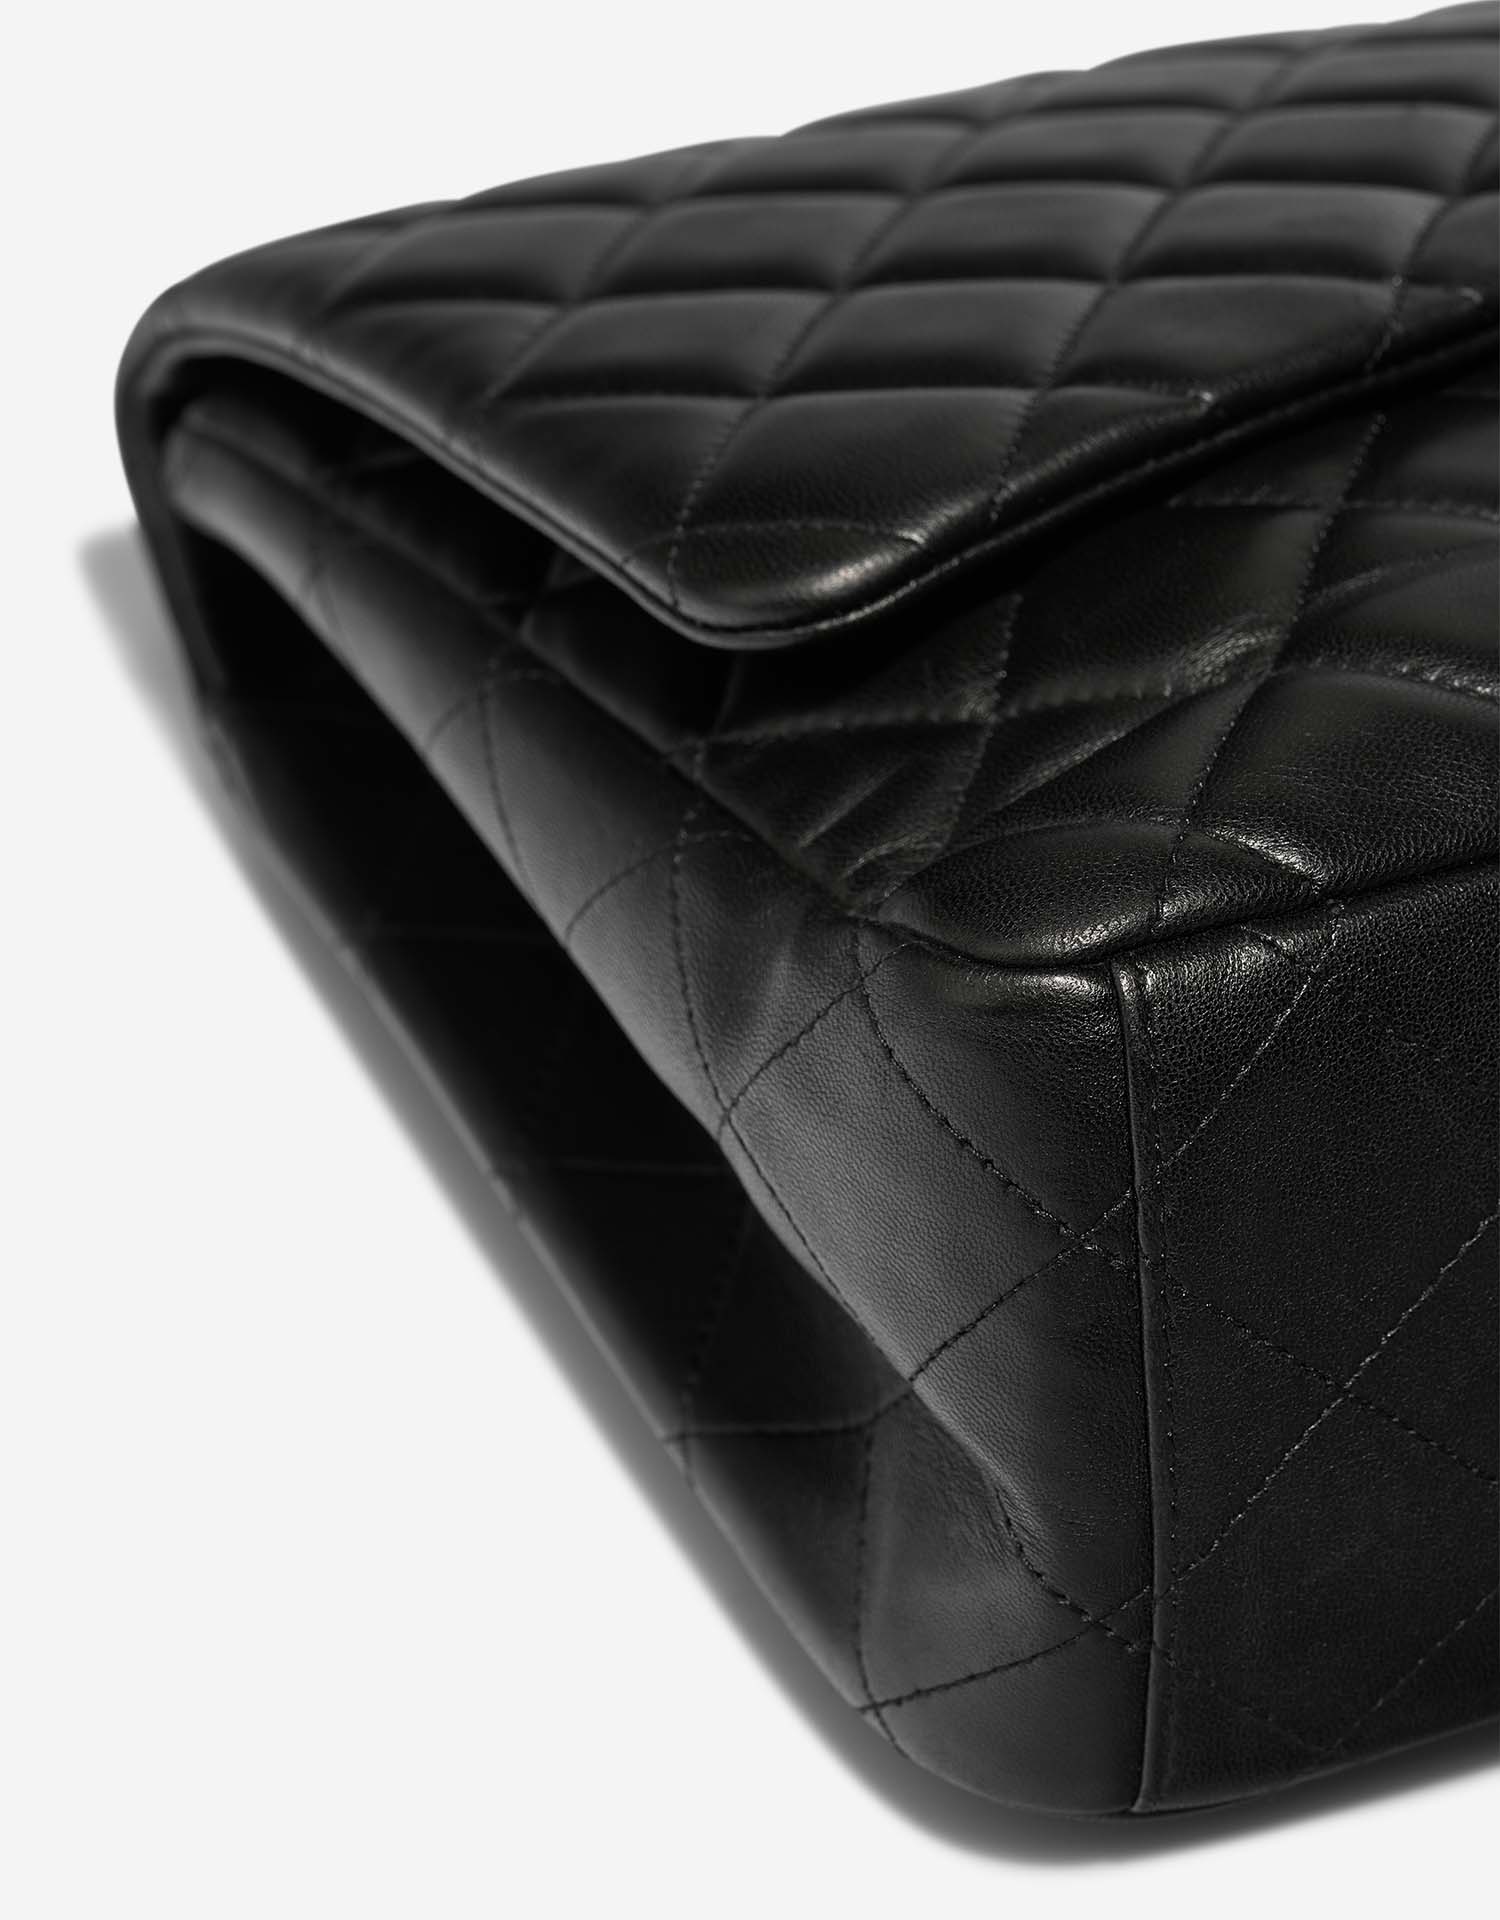 Chanel Timeless Maxi Black Gebrauchsspuren | Verkaufen Sie Ihre Designer-Tasche auf Saclab.com